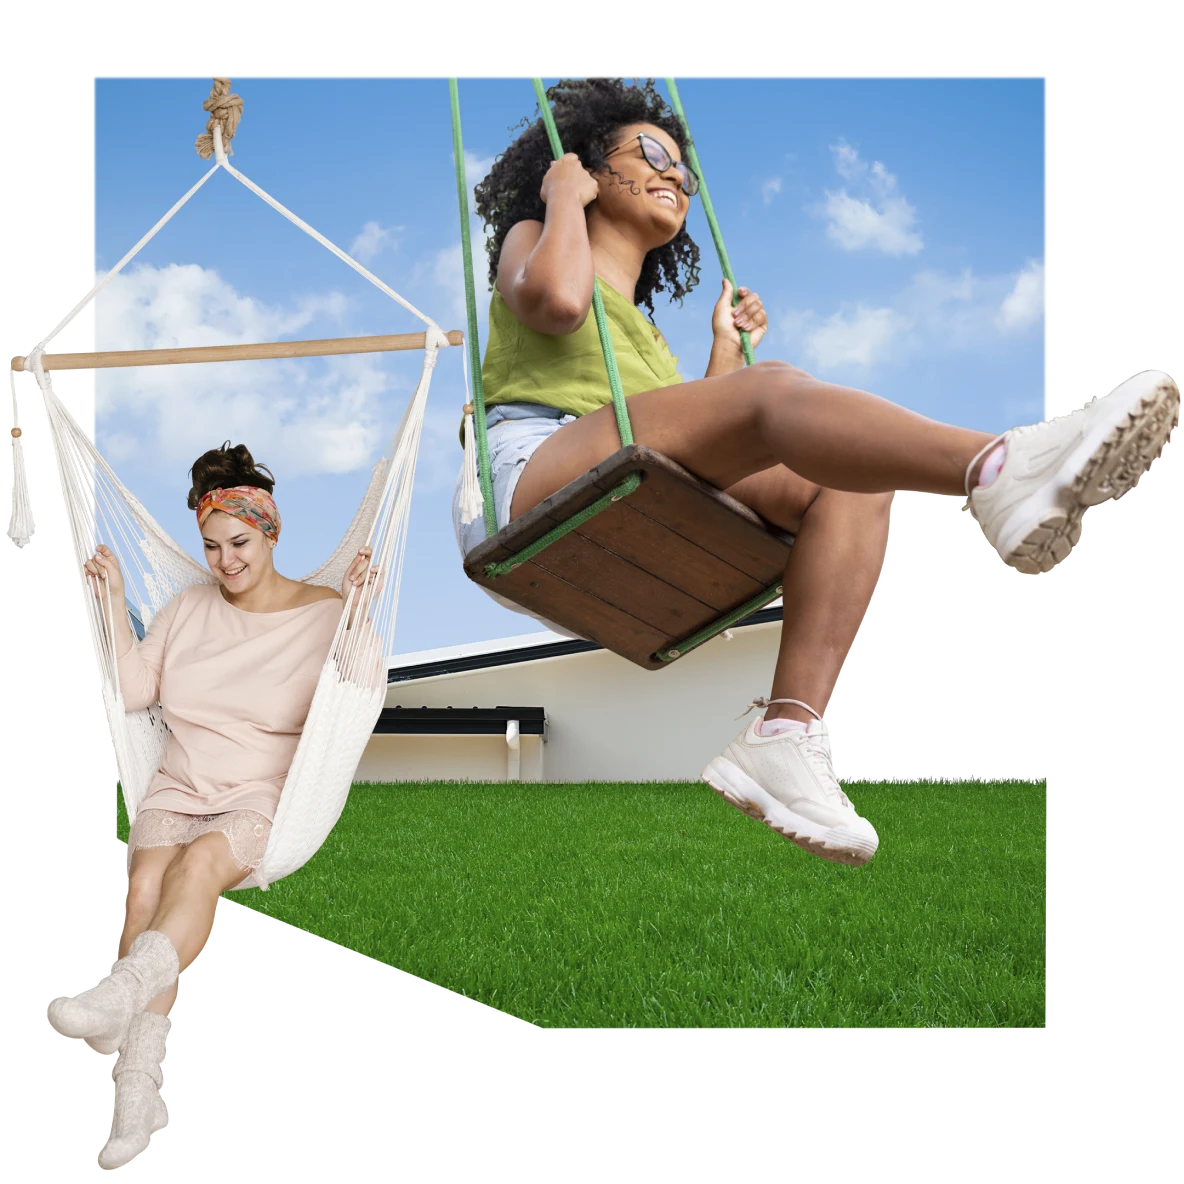 Links eine Frau in Rosa auf einem hängenden Sessel, die ein Bein in die Luft streckt. Rechts eine Frau in einem grünen Oberteil und weißen Shorts auf einer Holzschaukel mit grünen Griffen. Im Hintergrund ein blauer Himmel und unten grünes Gras.